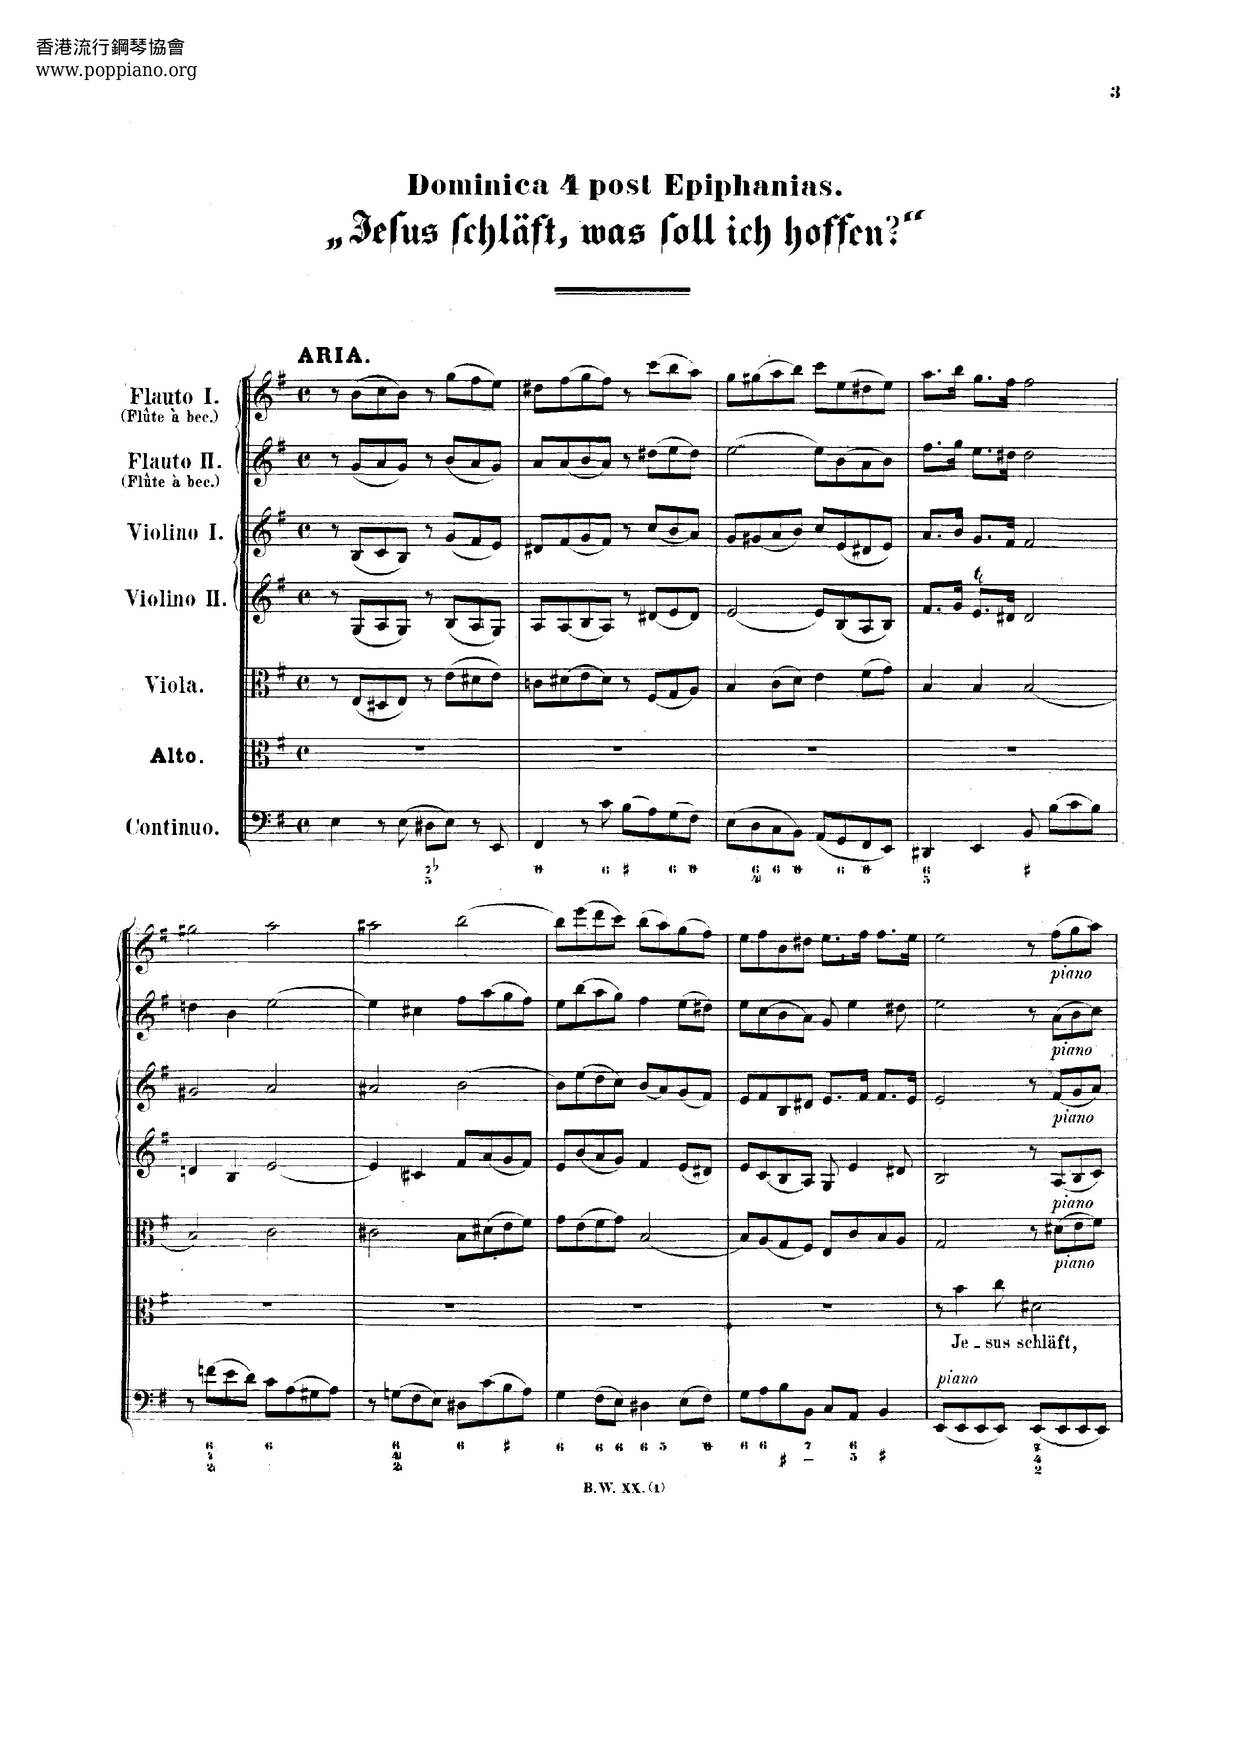 Jesus Schläft, Was Soll Ich Hoffen?, BWV 81 Score